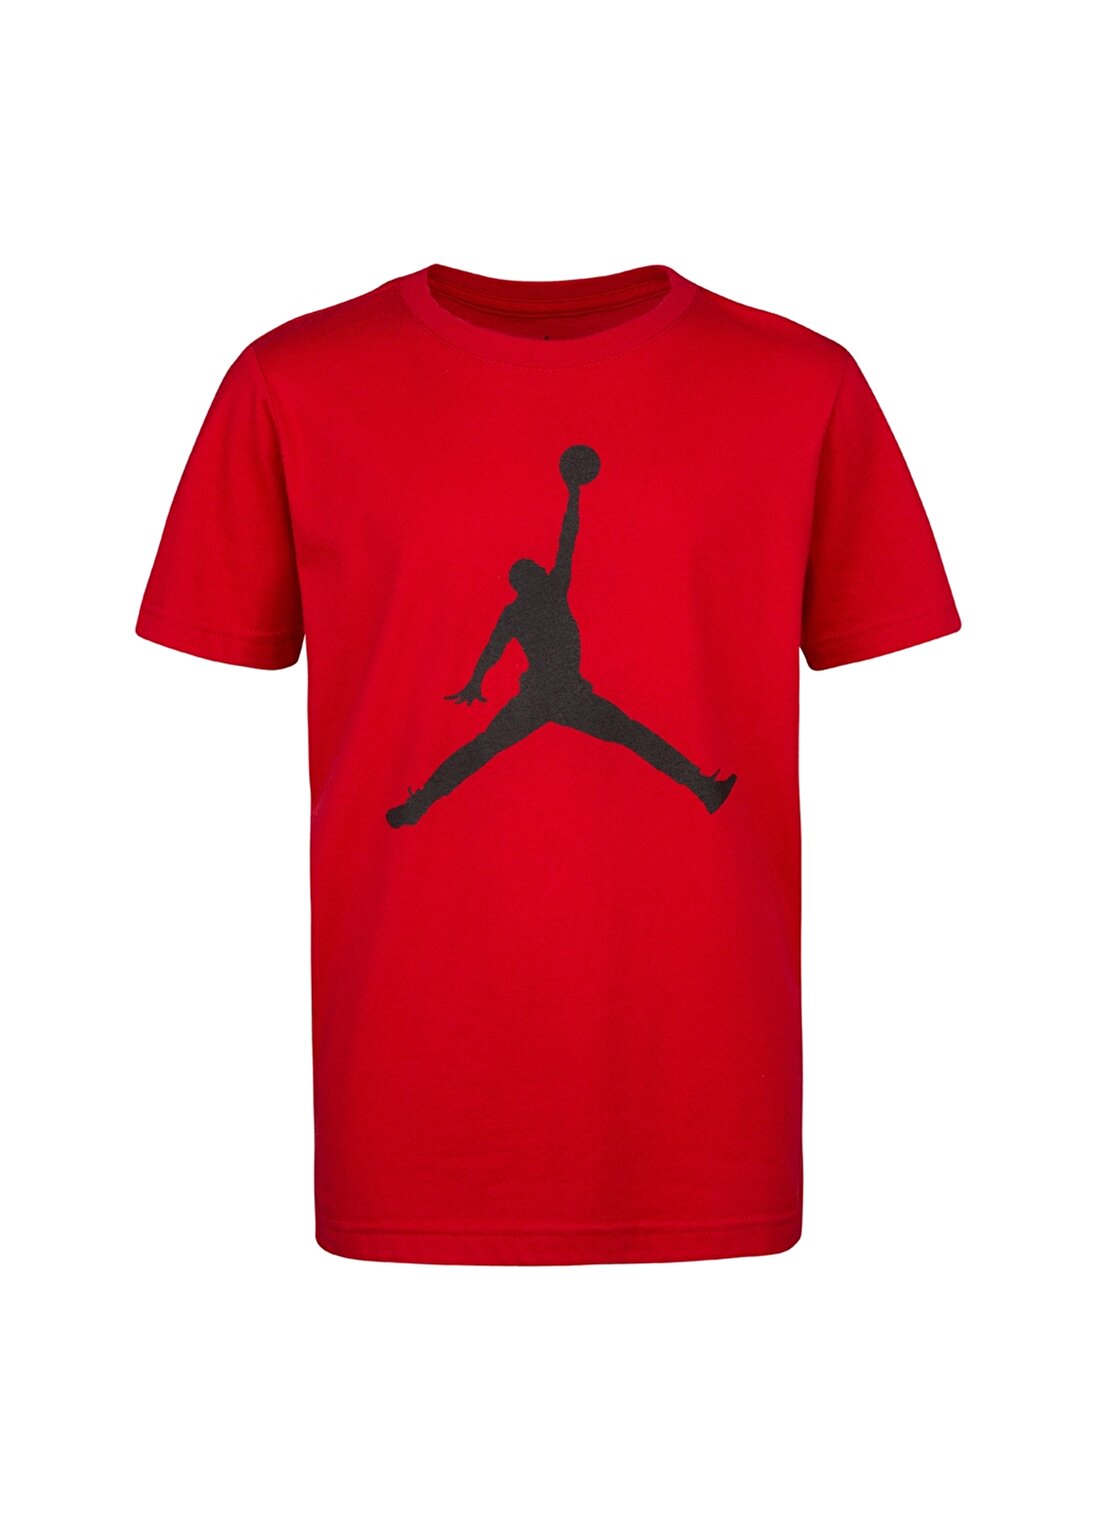 Nike Baskılı Kırmızı T-Shirt